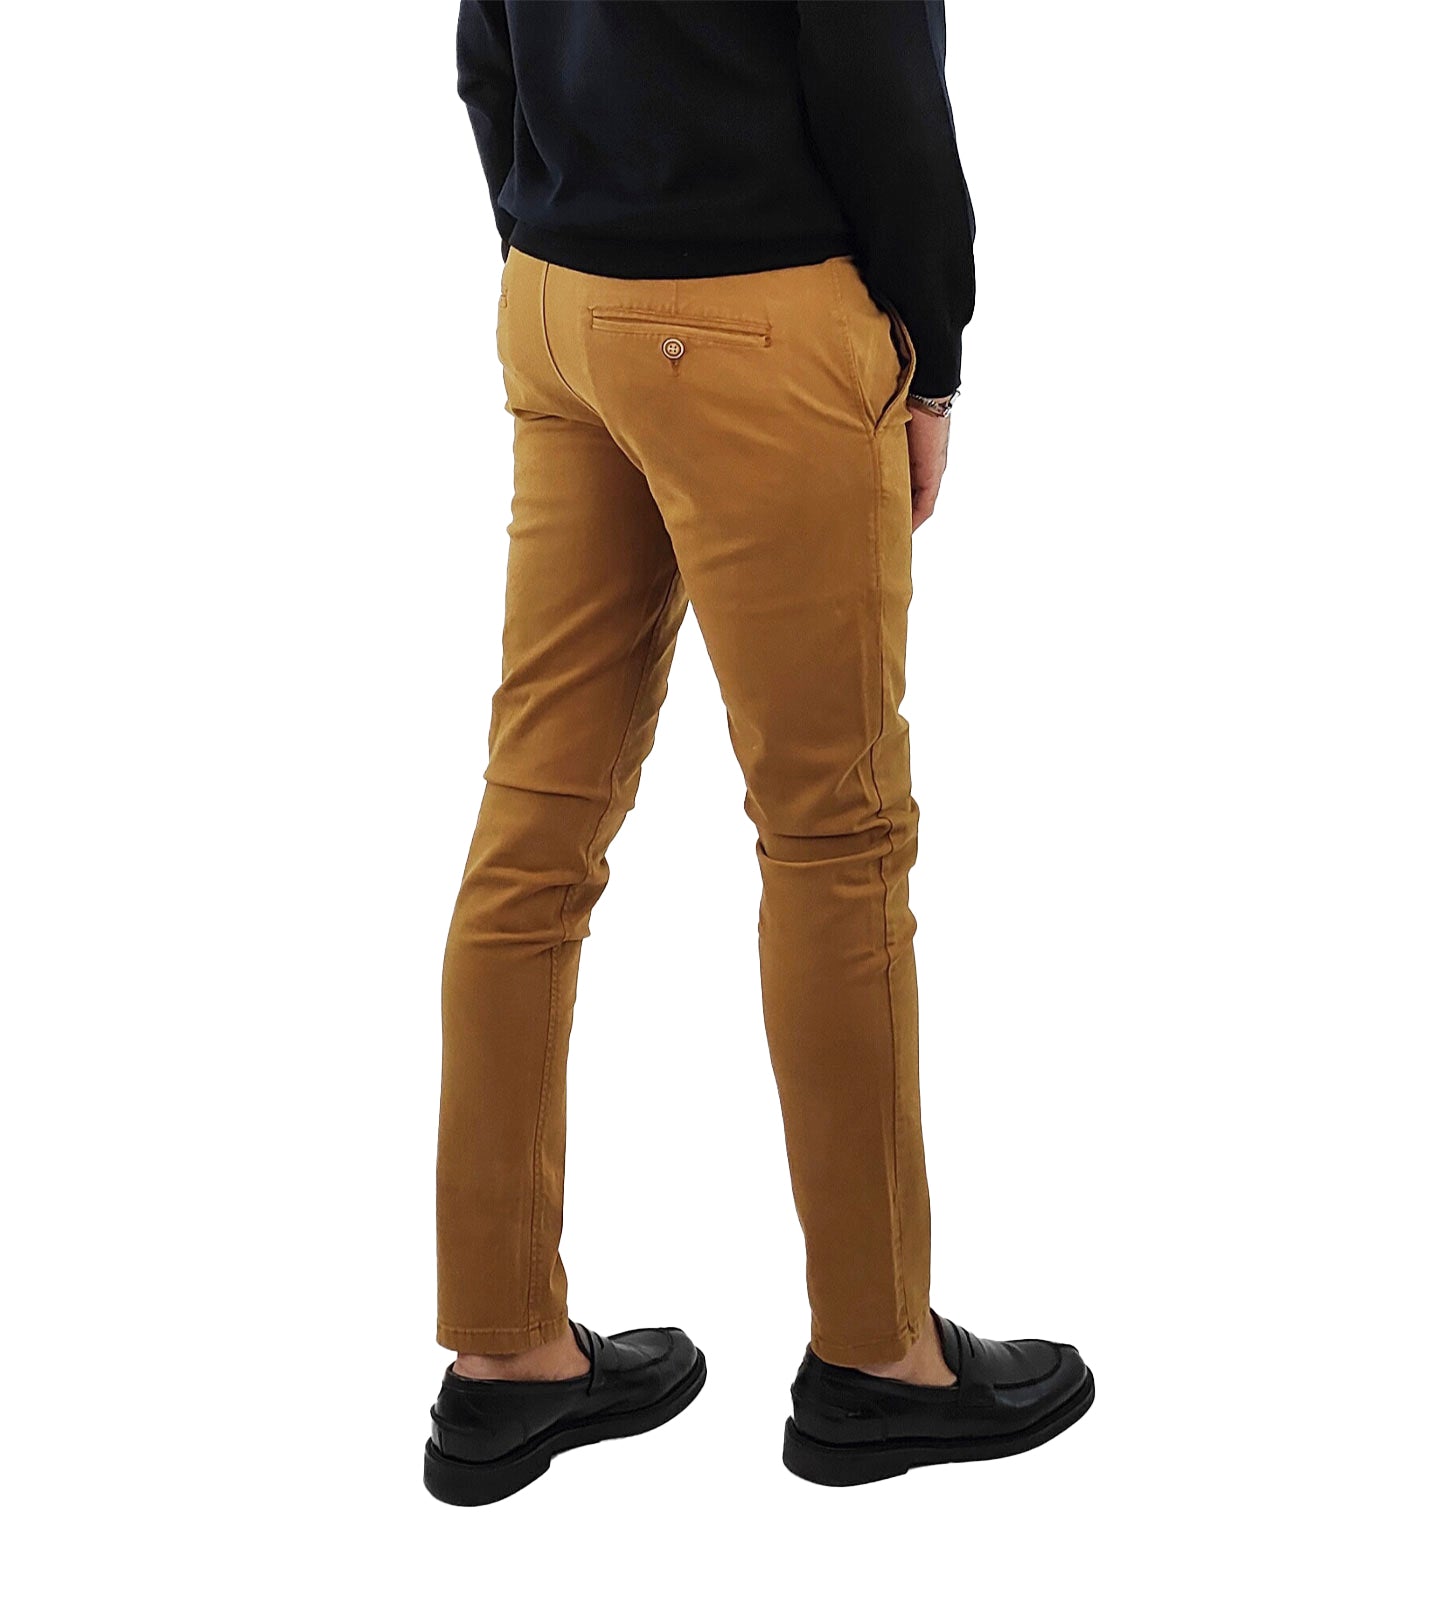 Pantalone Chino Uomo Tasca a Filetto colore Camel